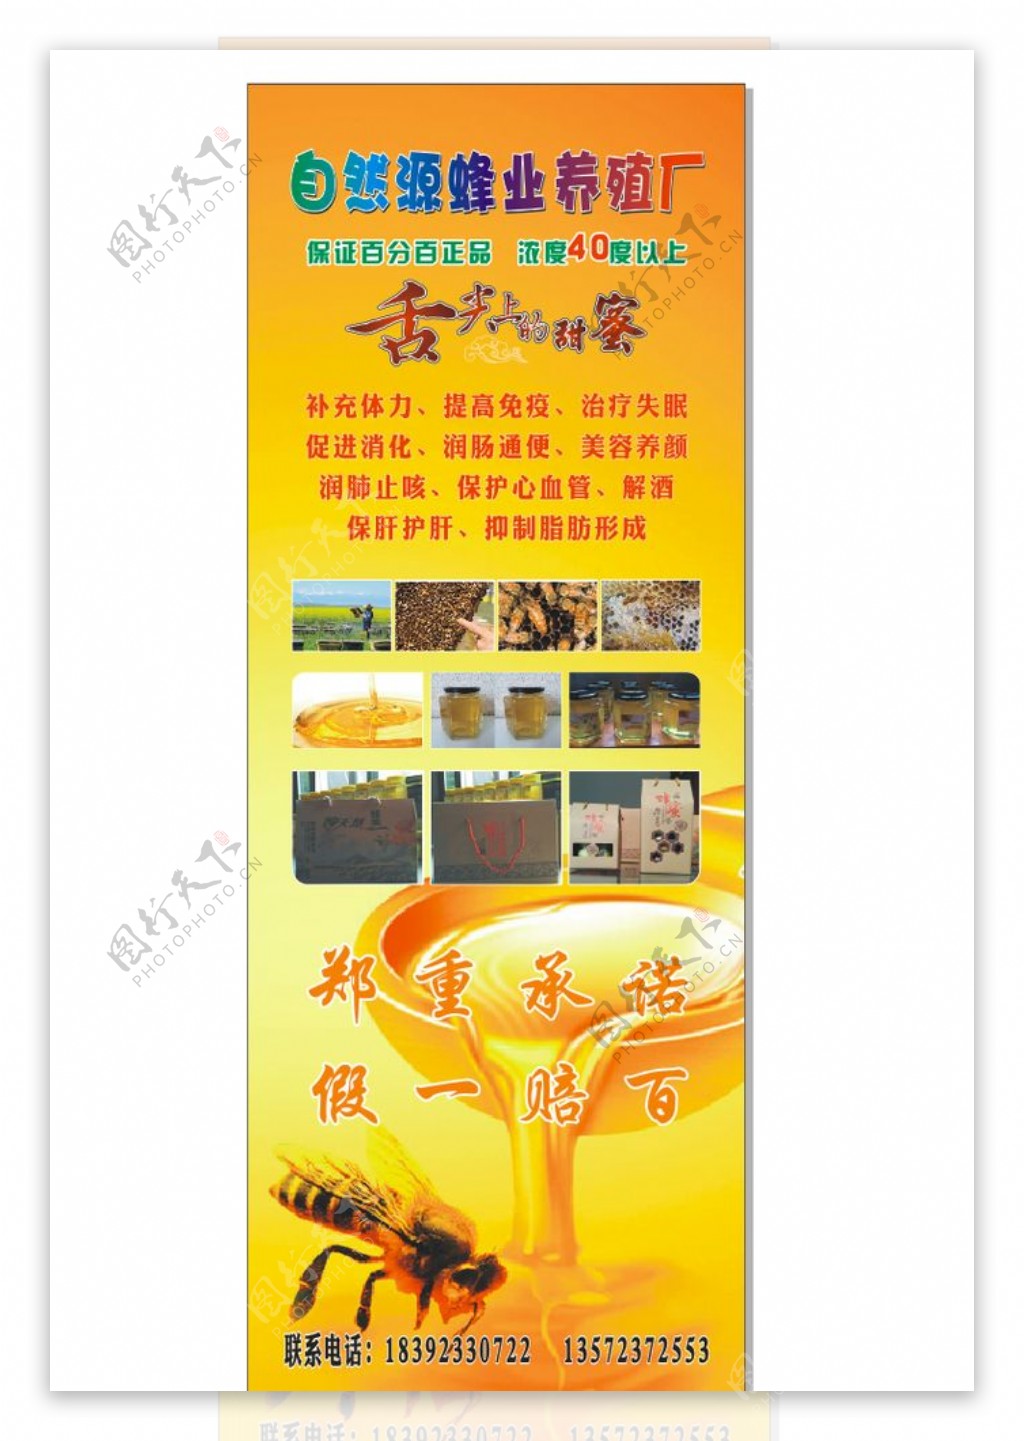 自然源蜂业养殖厂图片